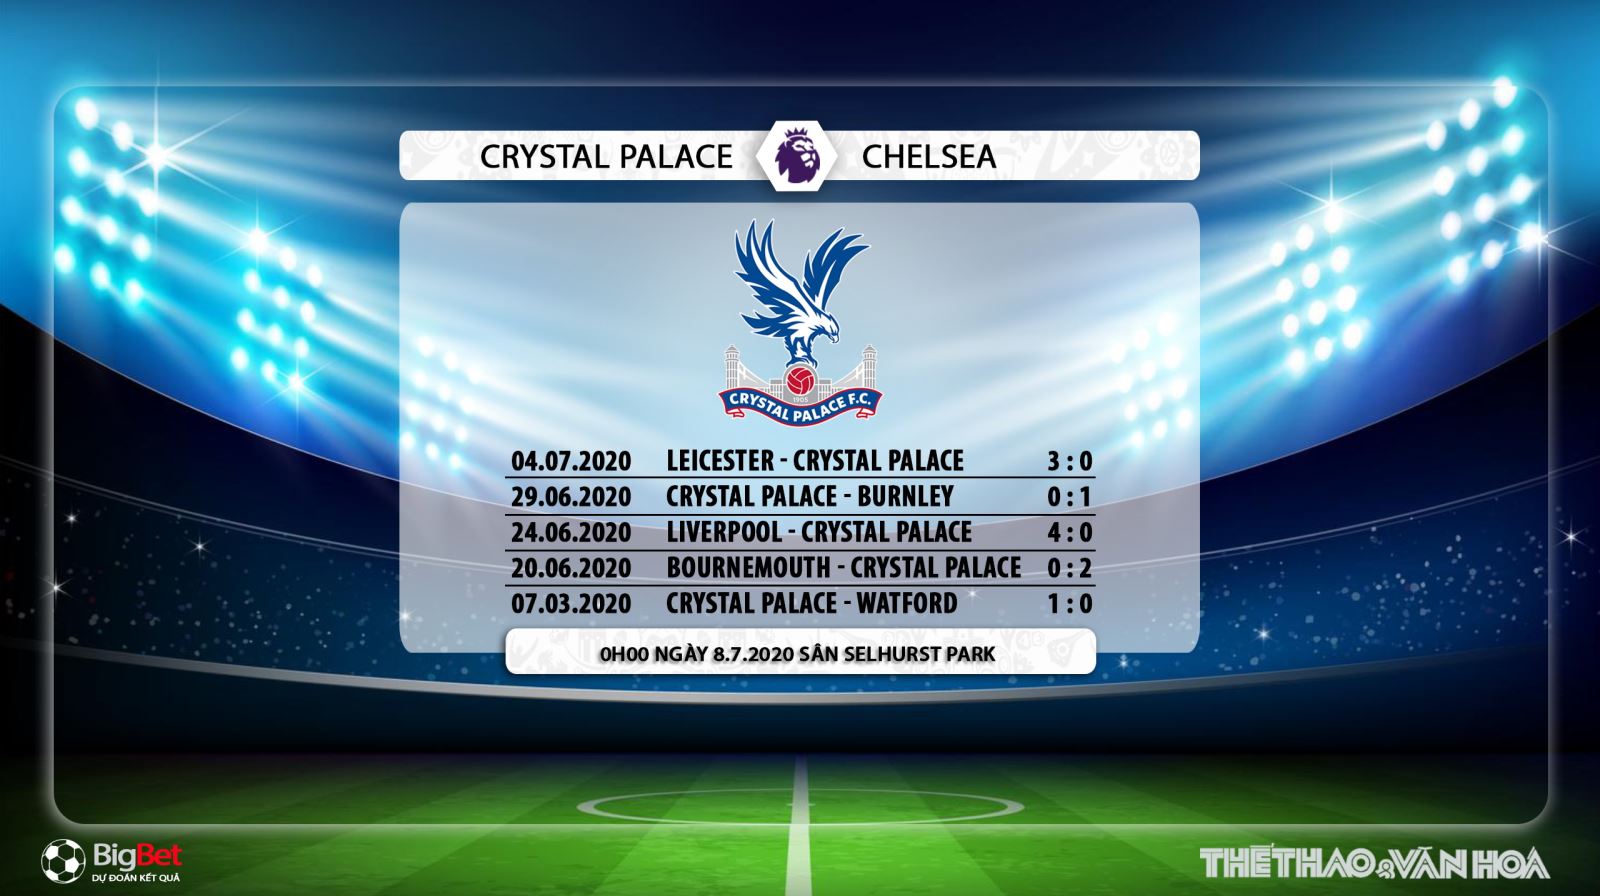 Crysal Palace vs Chelsea, Chelsea, nhận định bóng đá, kèo bóng đá, trực tiếp Crysal Palace vs Chelsea, nhận định, dự đoán, lịch thi đấu bóng đá hôm nay